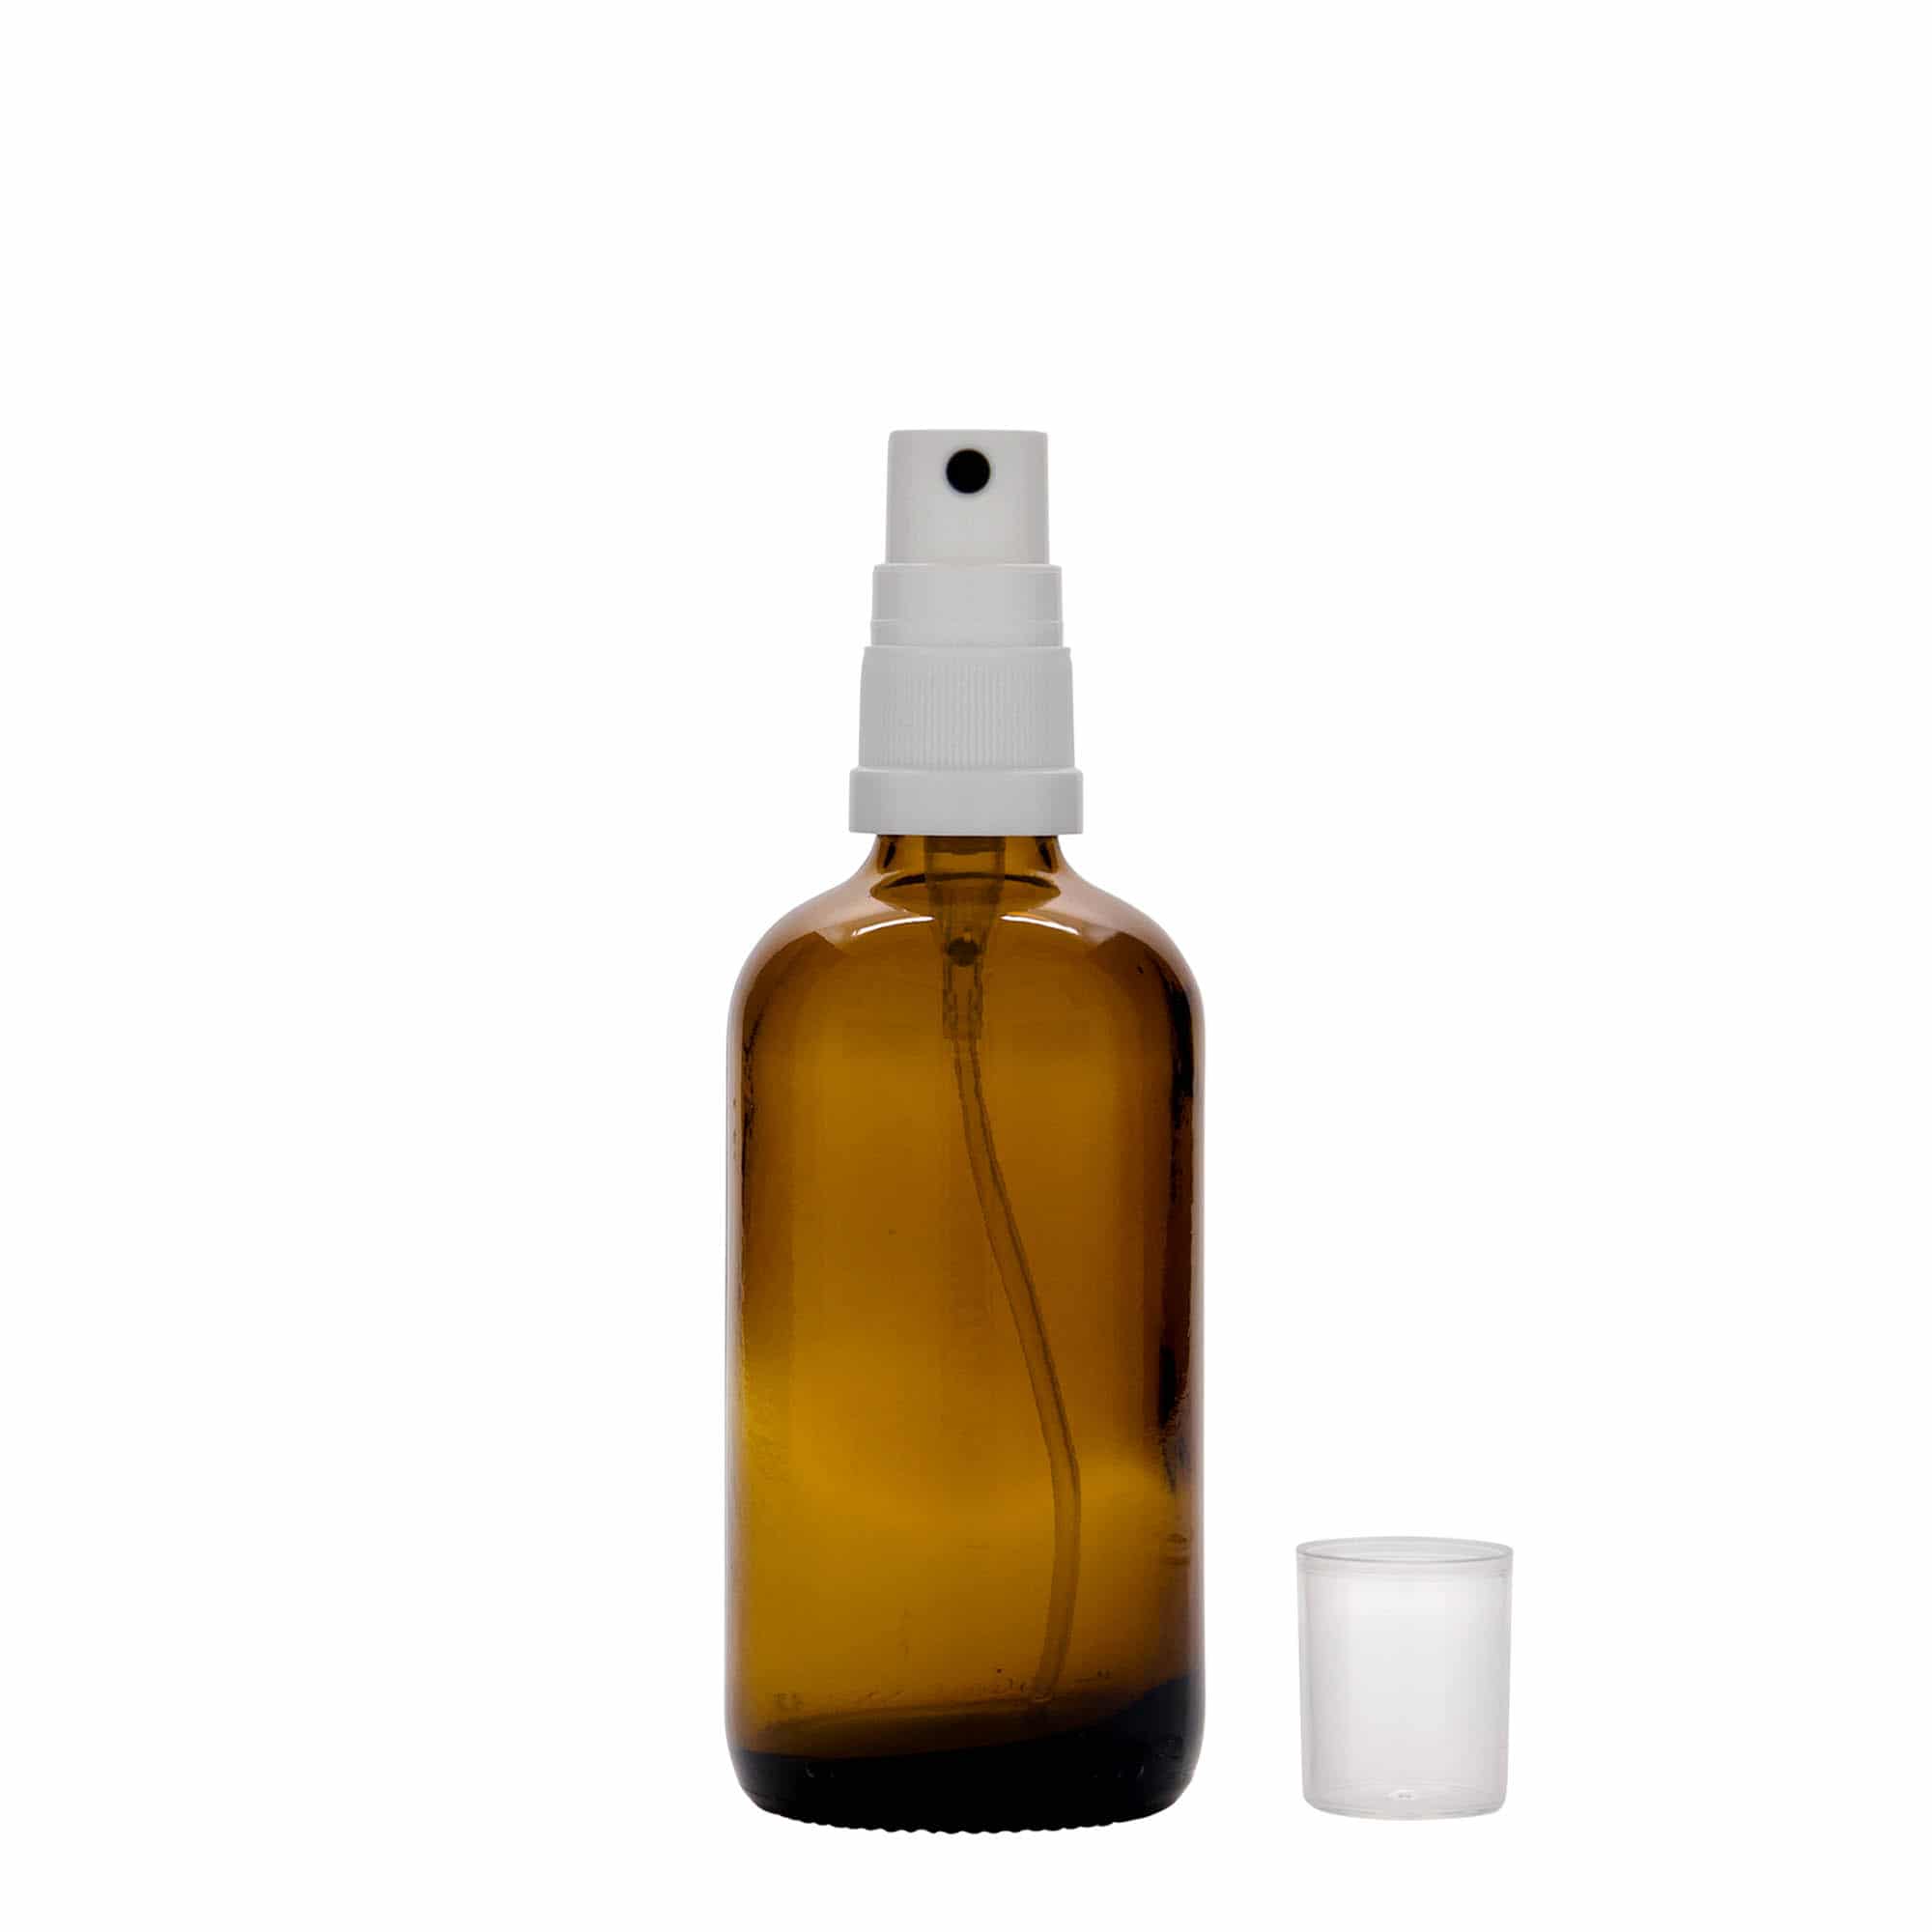 100 ml Flacone spray farmaceutico, vetro, marrone, imboccatura: DIN 18